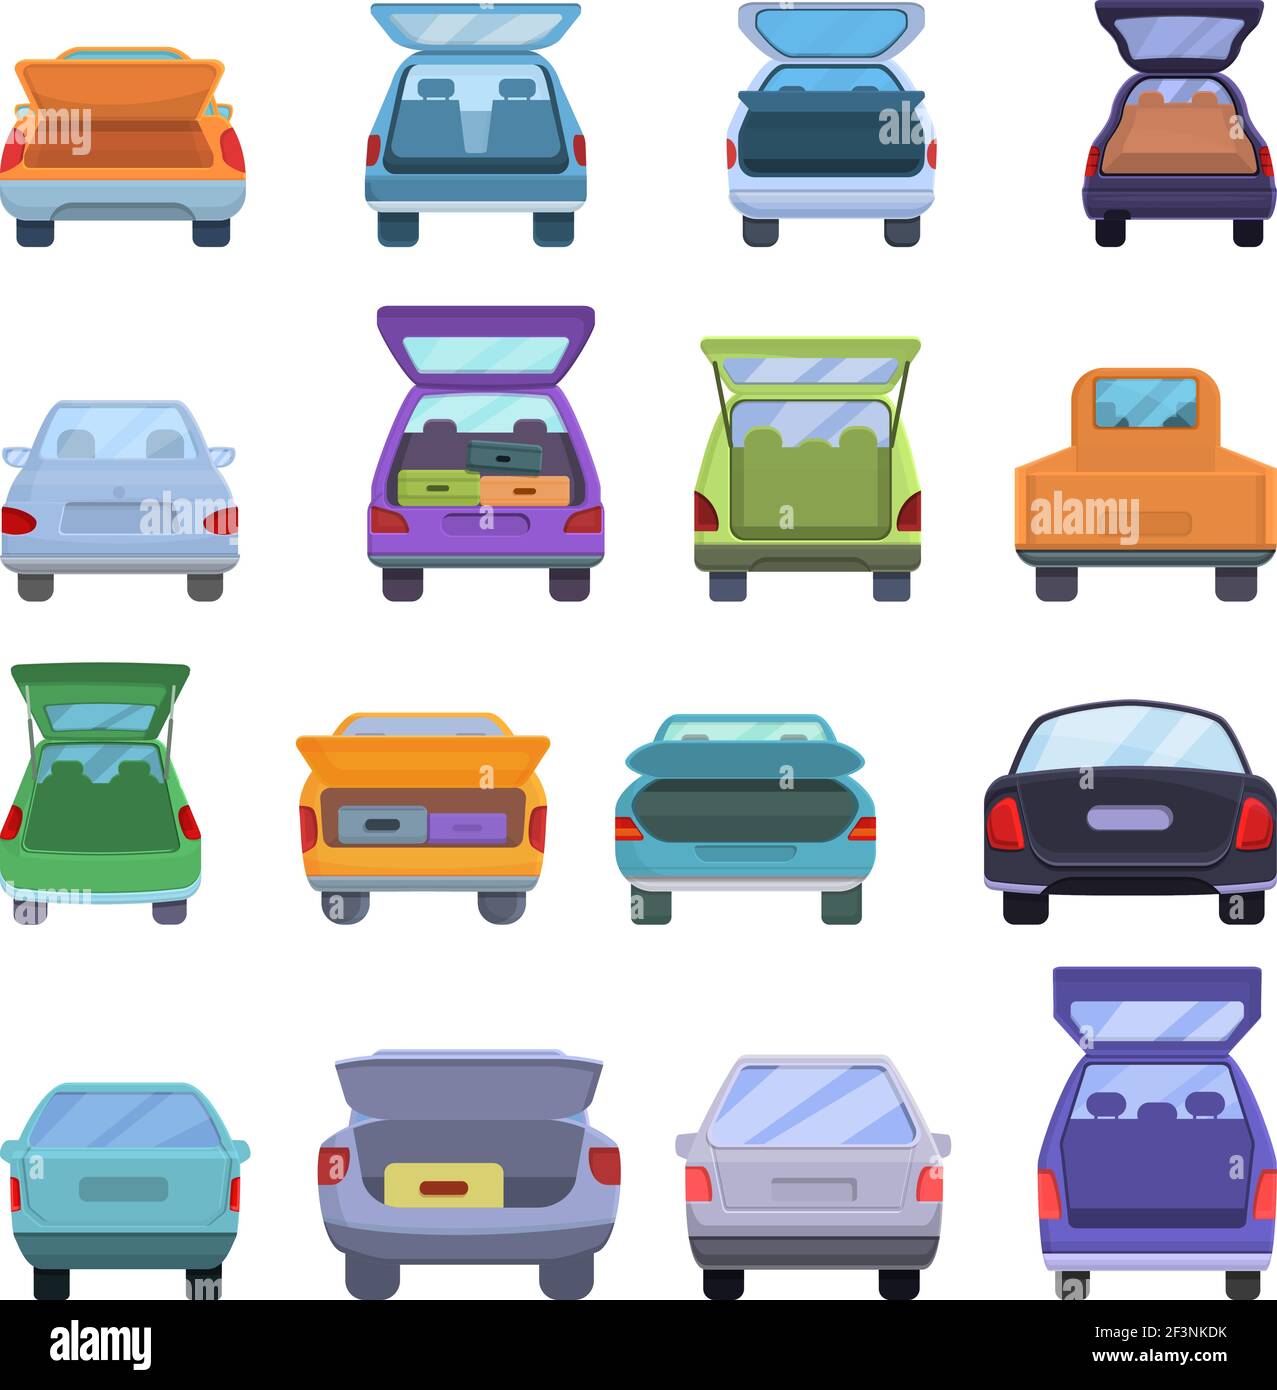 Cars icons  Car icons, Car vector, Car cartoon